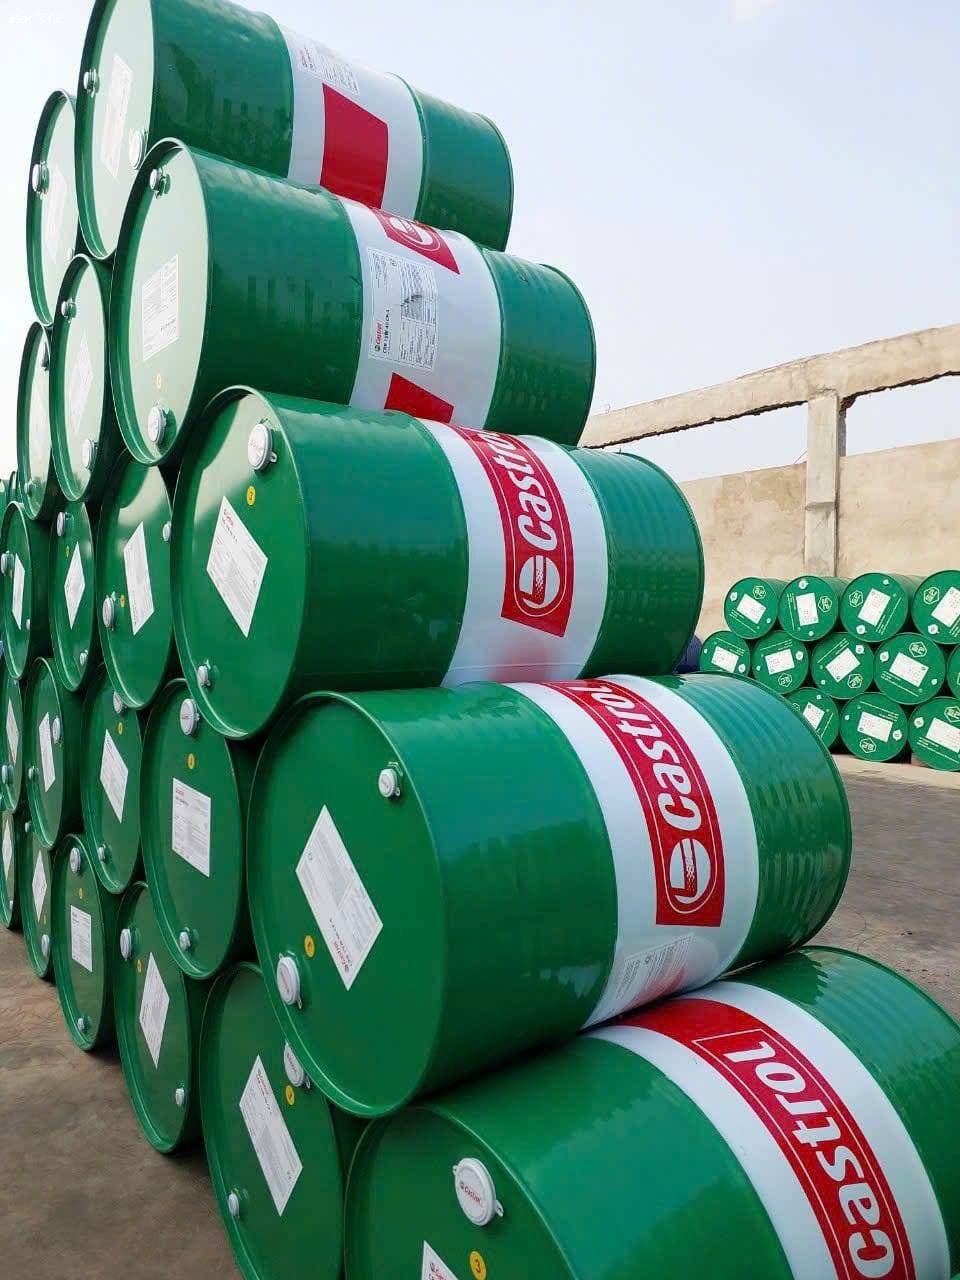 Đại lý phân phối dầu nhớt Castrol Bp, Shell, Saigon Petro, Apoil, Motul tại quận 12 – 0942.71.70.76